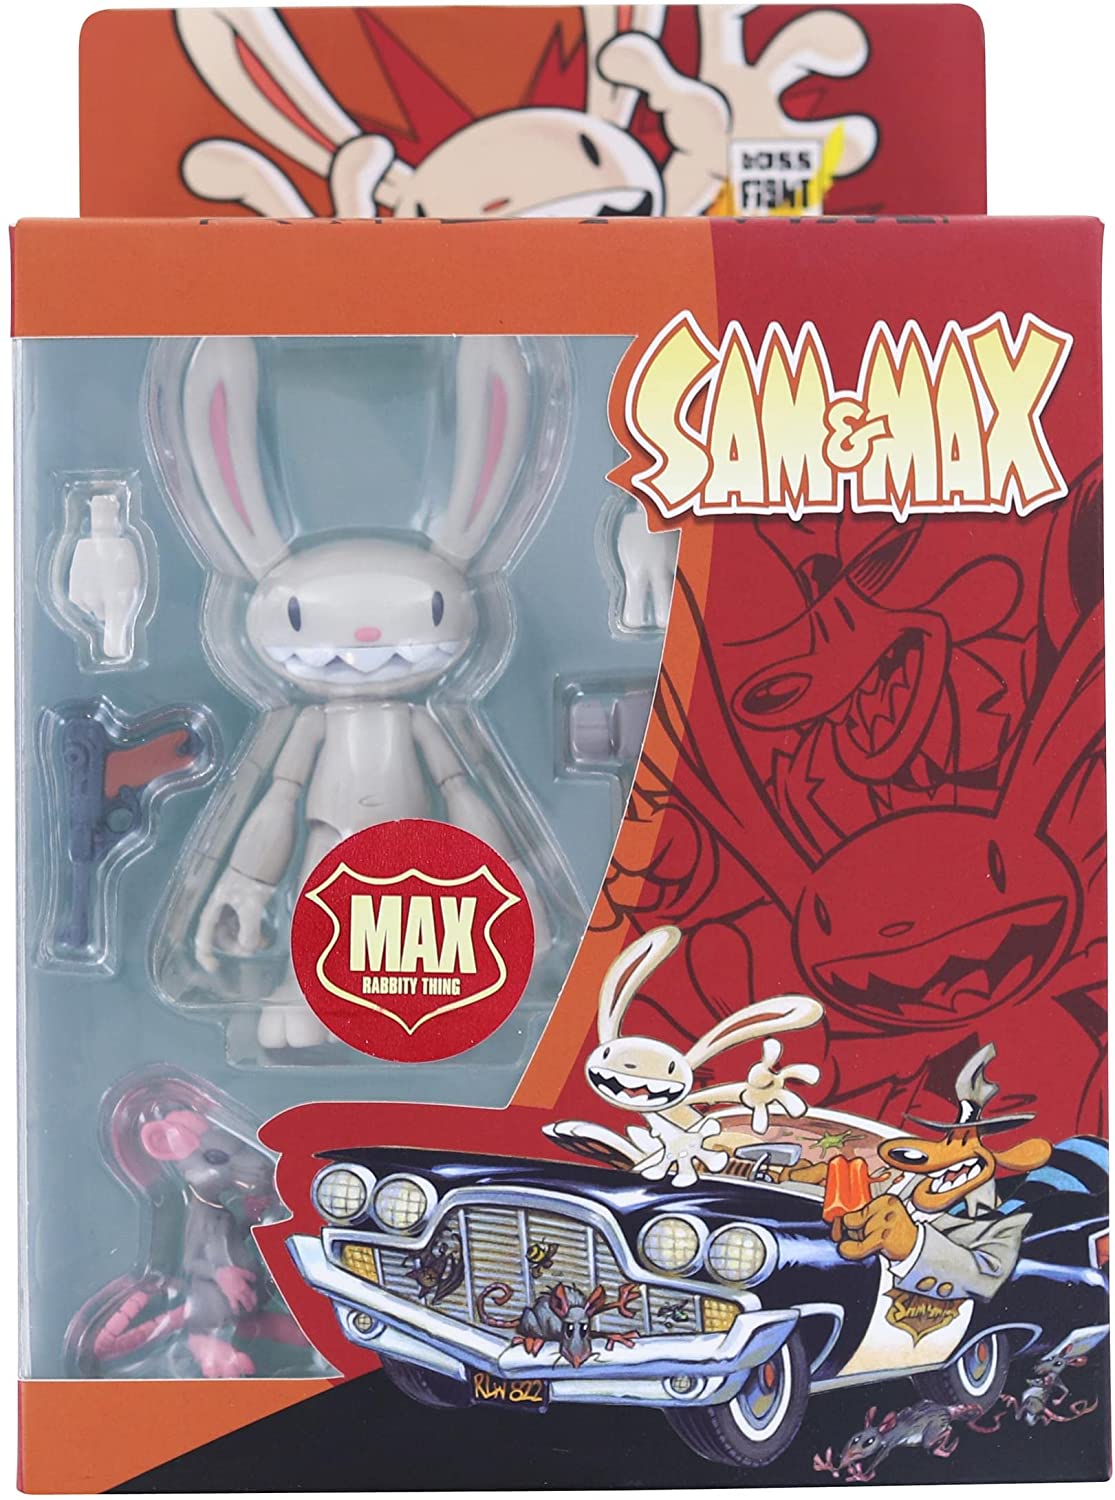 Boss Fight Studio: Sam & Max Action Figure - Max, Rabbity Thing - Third Eye